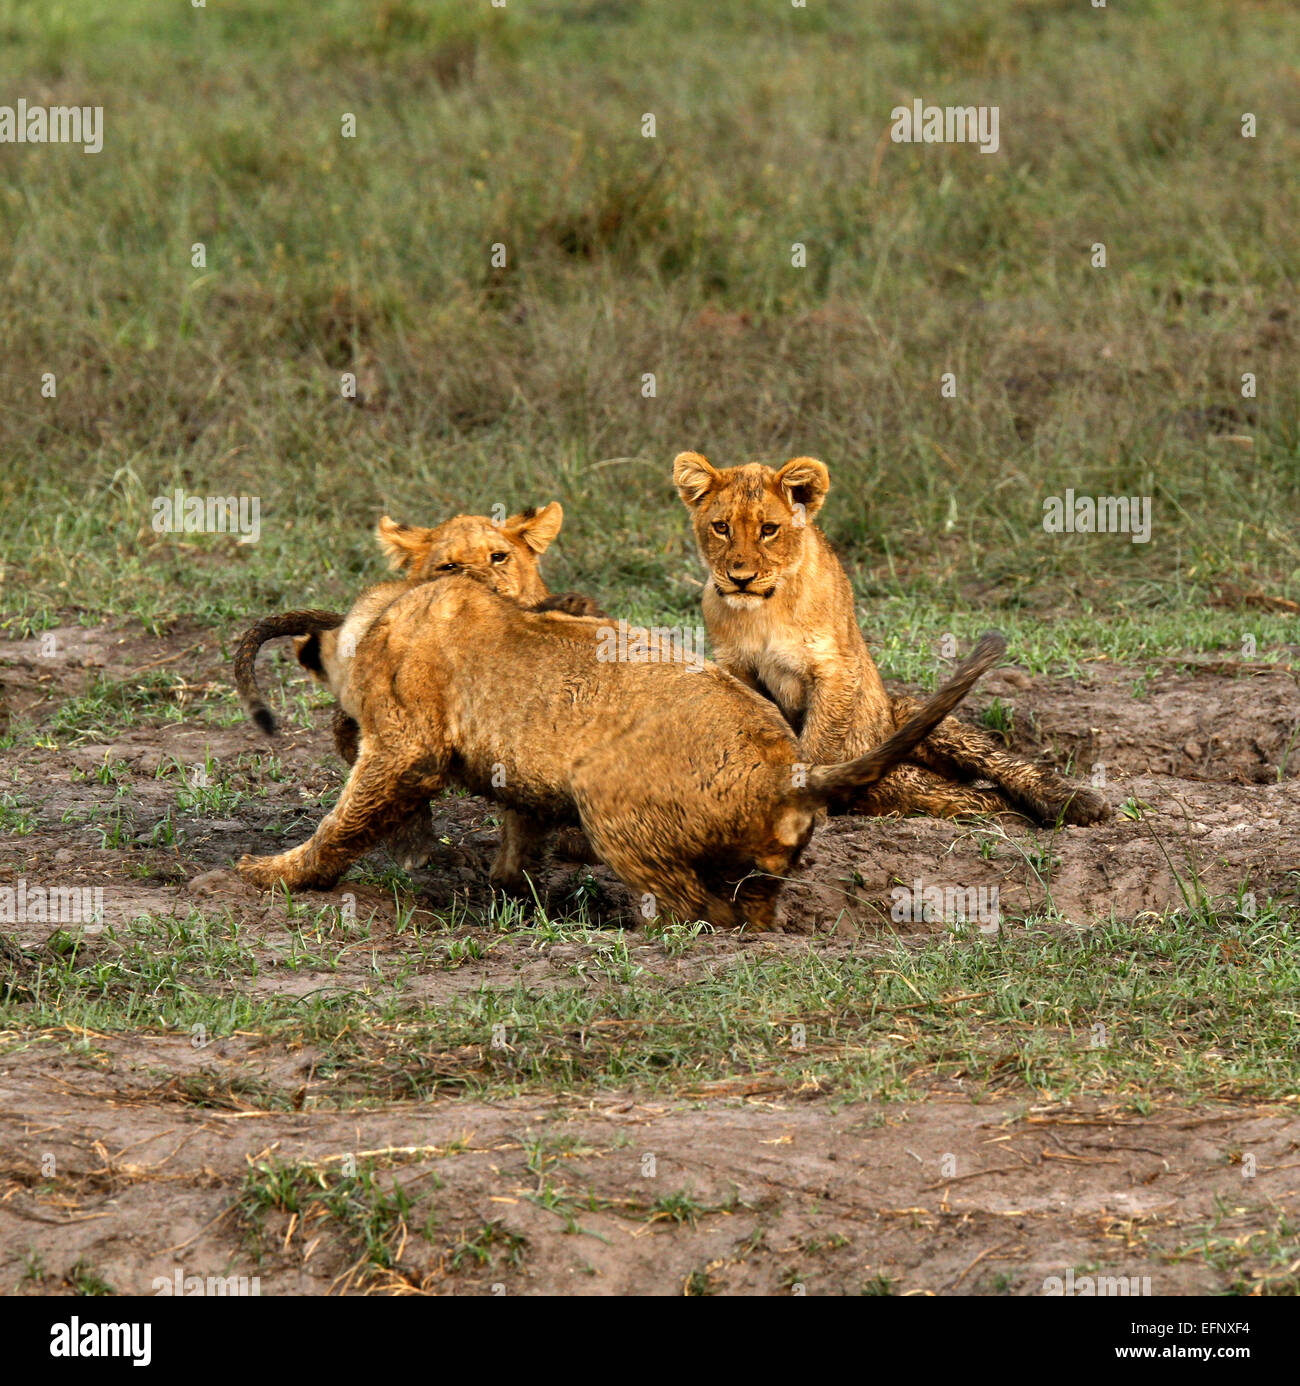 Wild African Lion cubs giocoso sulle vaste pianure che cresce nella keystone predatori imparare a caccia durante la riproduzione Foto Stock